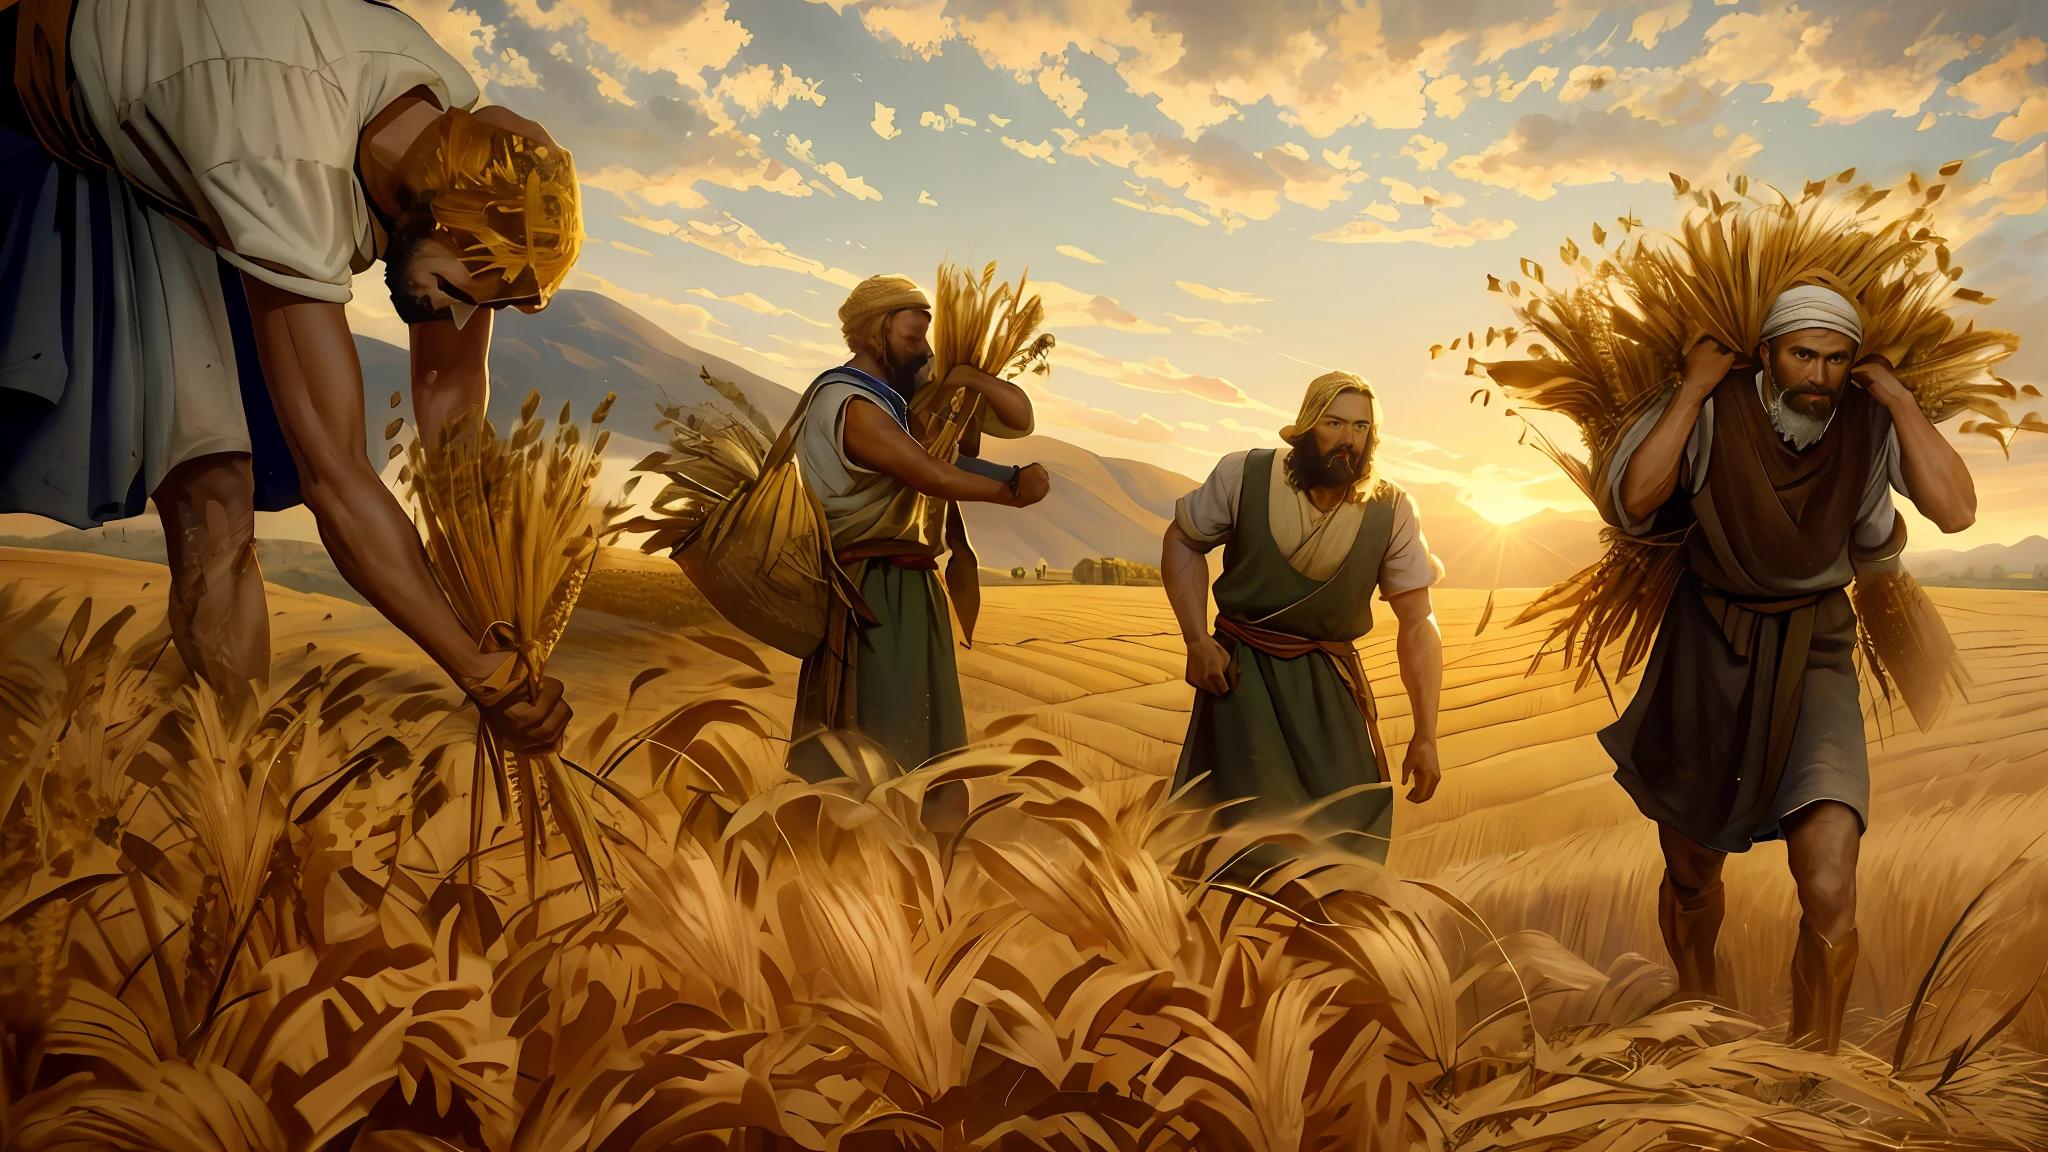 Pintura a óleo, há três homens colhendo trigo no campo, plantação de trigo, representação bíblica épica, 8k hd, iluminação cinematográfica, alta qualidade.